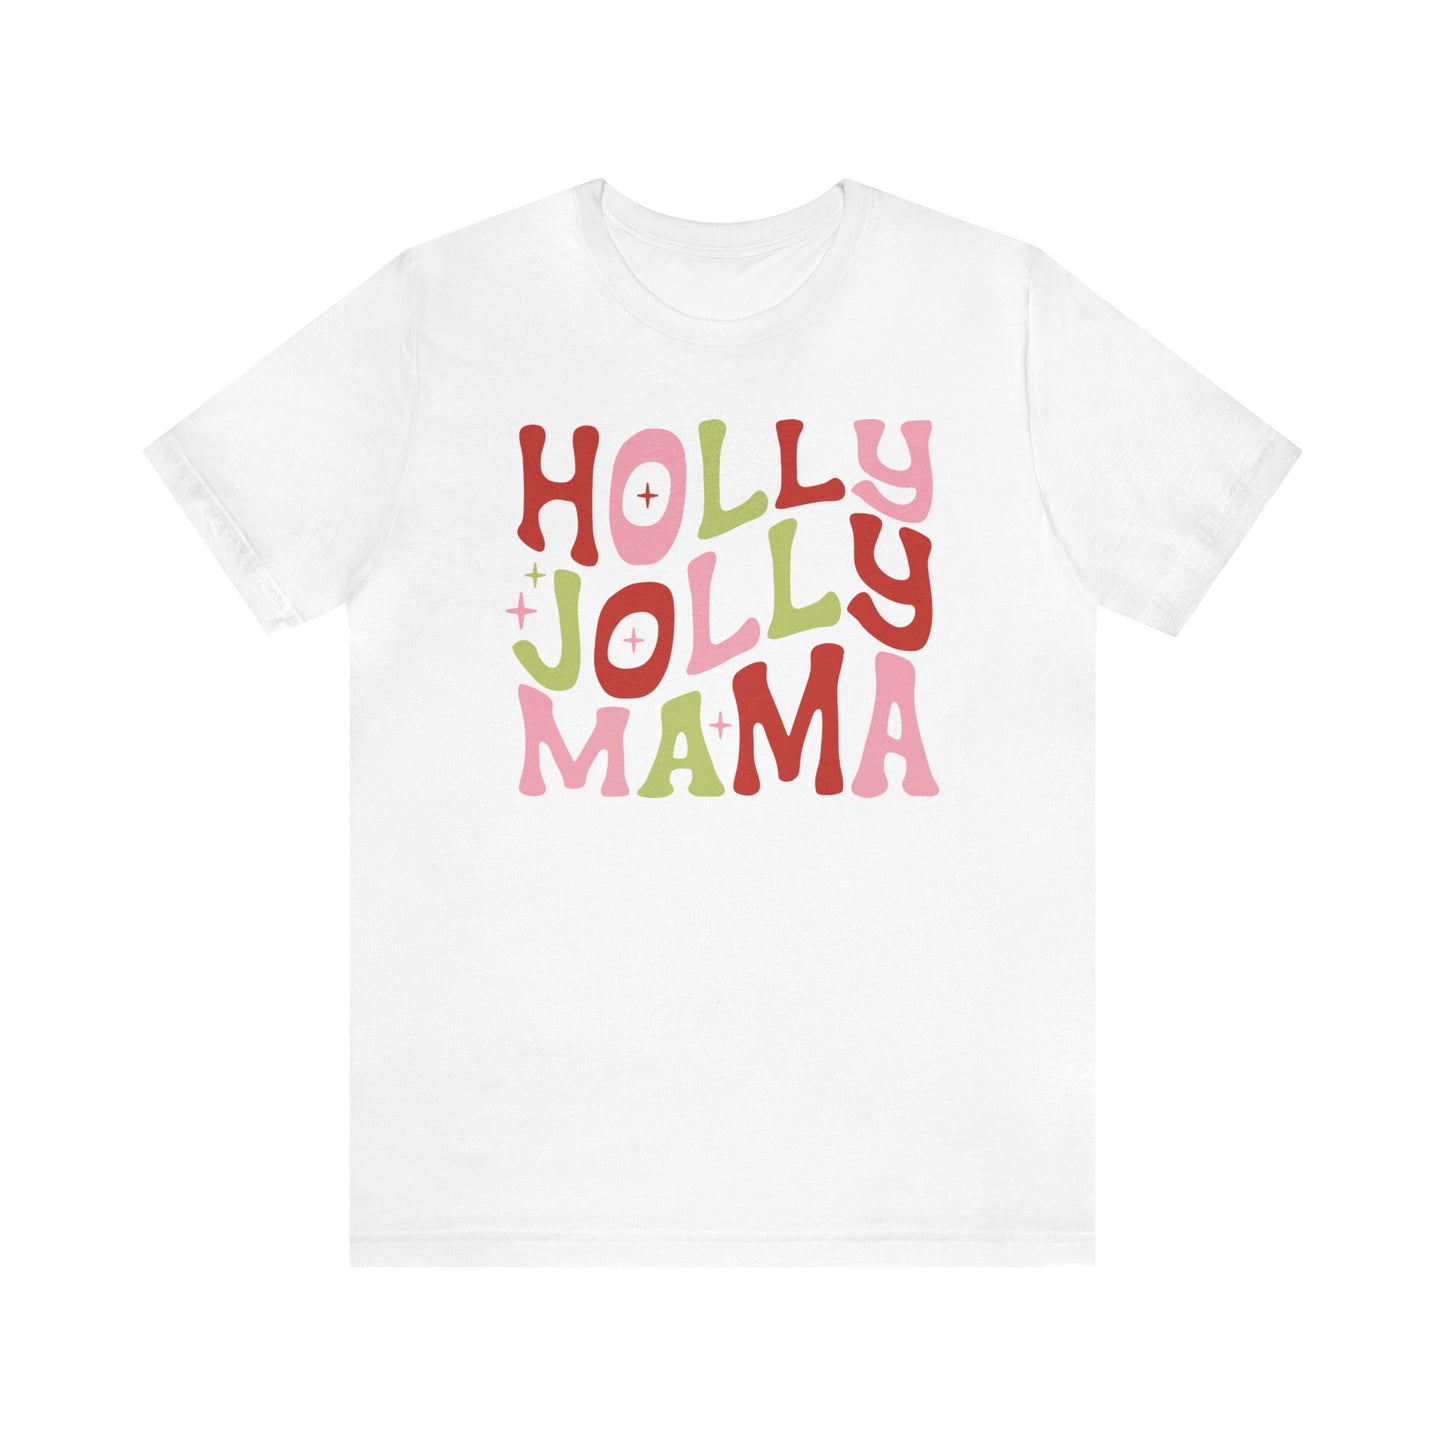 Retro Holly Jolly Mama Christmas Shirt Short Sleeve Tee